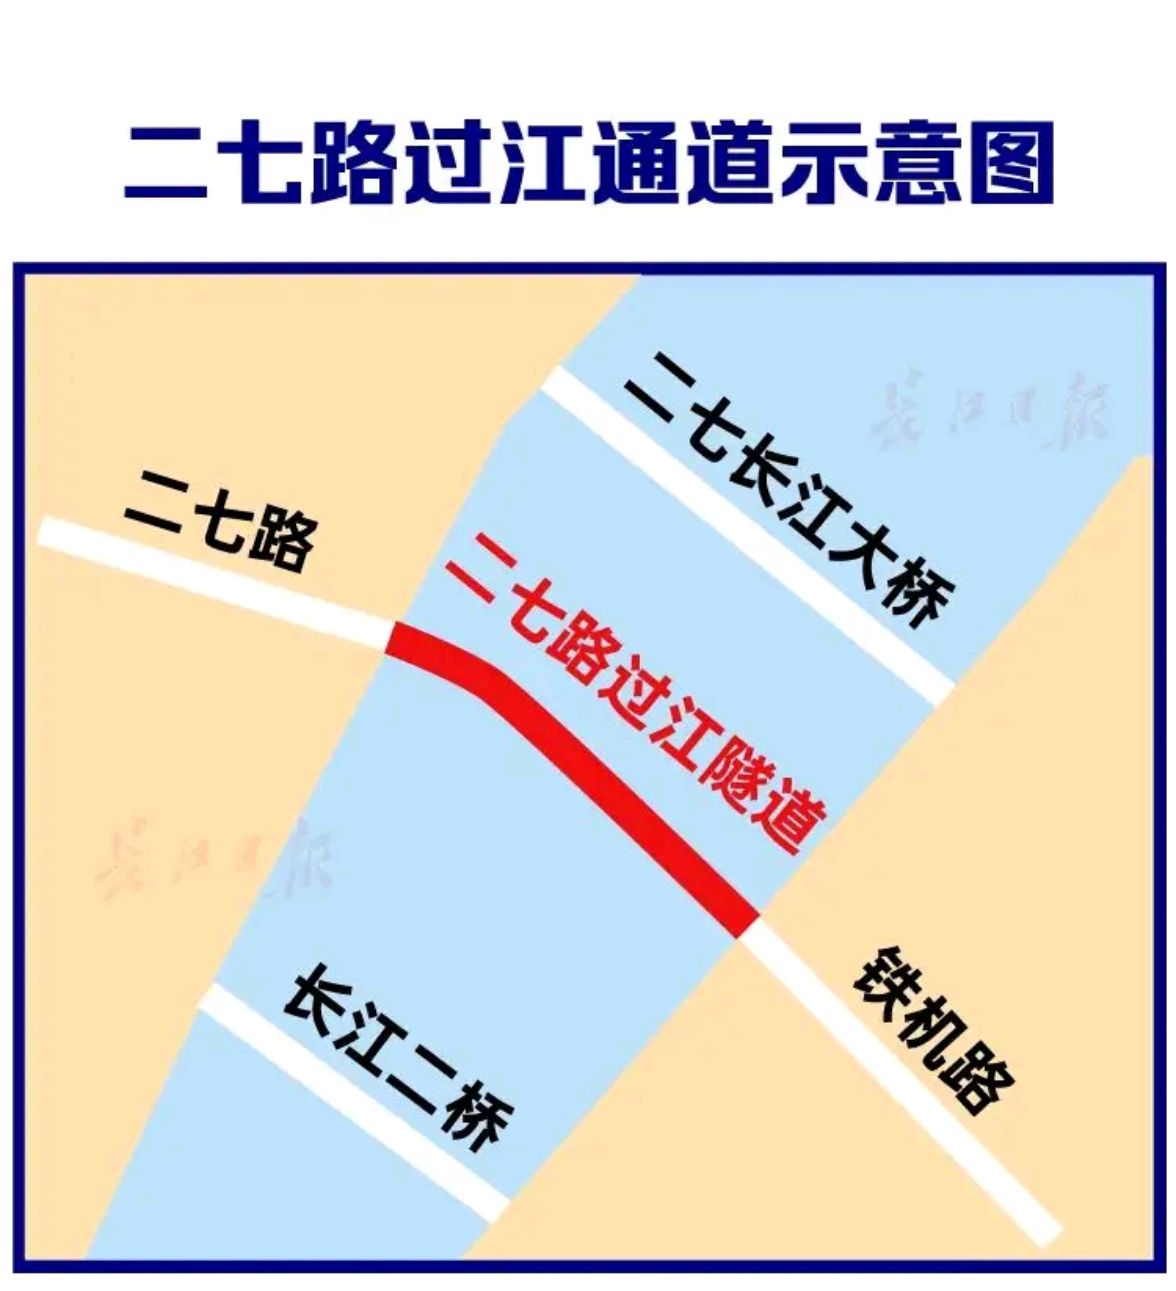 武汉二七路过江隧道双层双向6条车道,这是武汉的第三条过江隧道